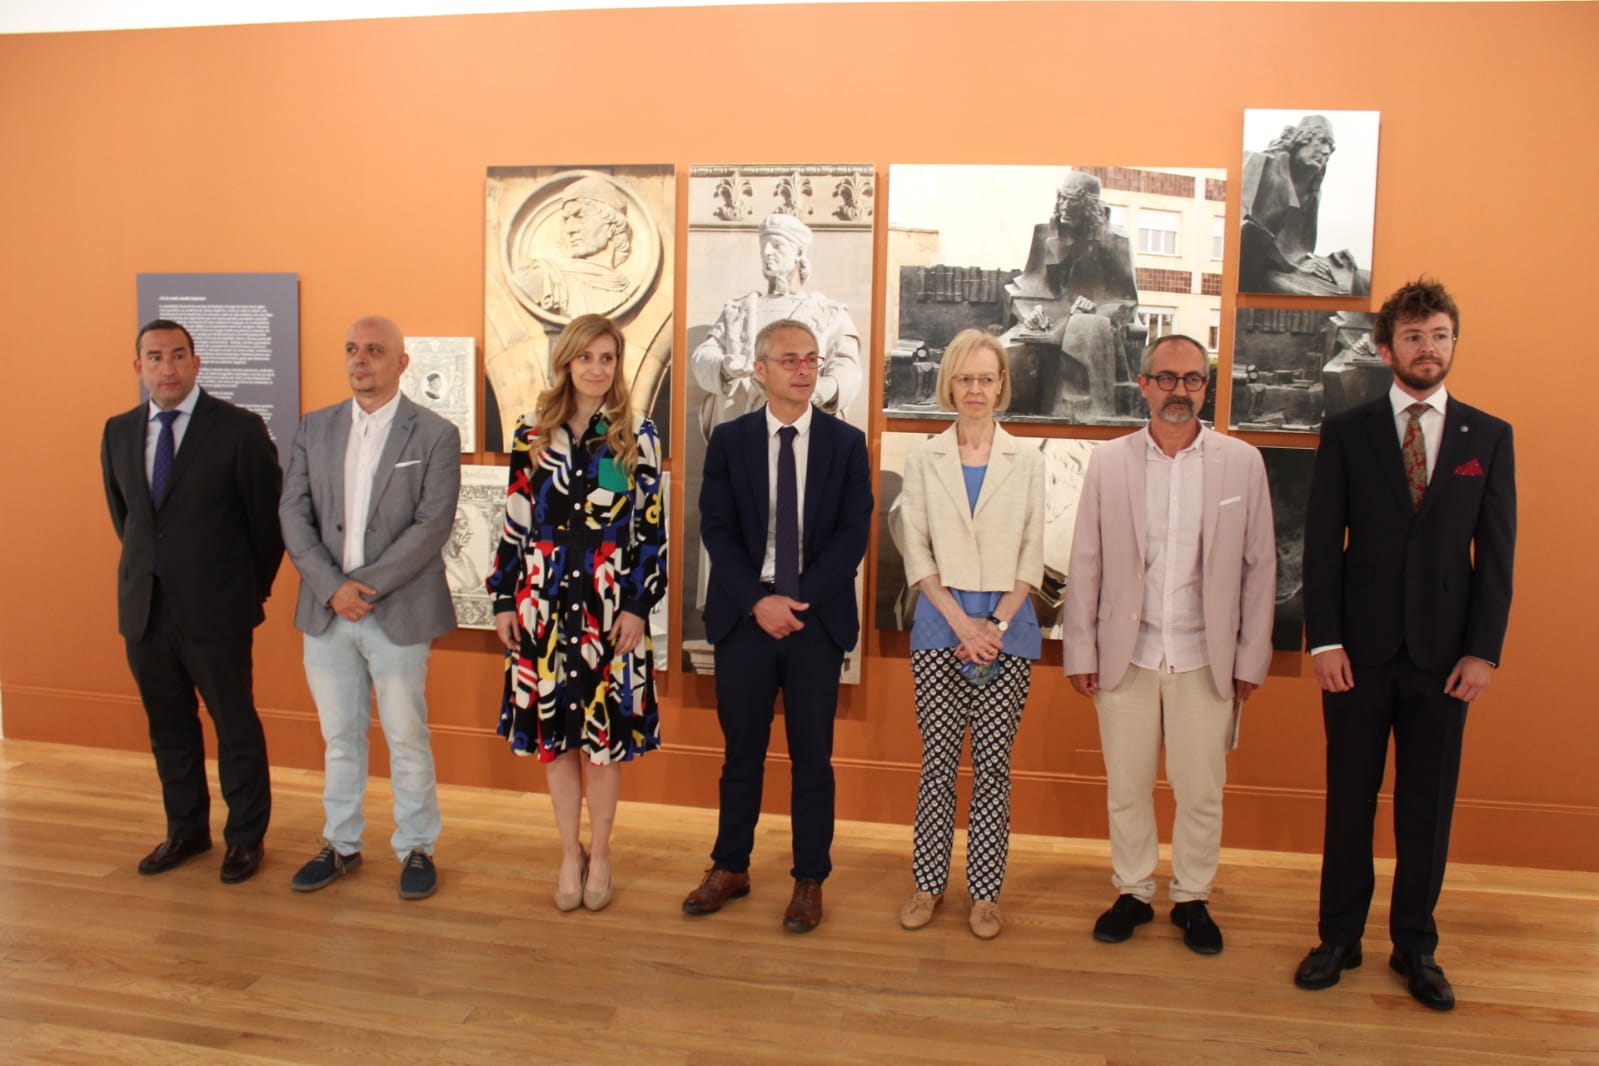 Inauguración de la exposición 'Nebrija, el ideal humanista' en la Universidad de Salamanca.